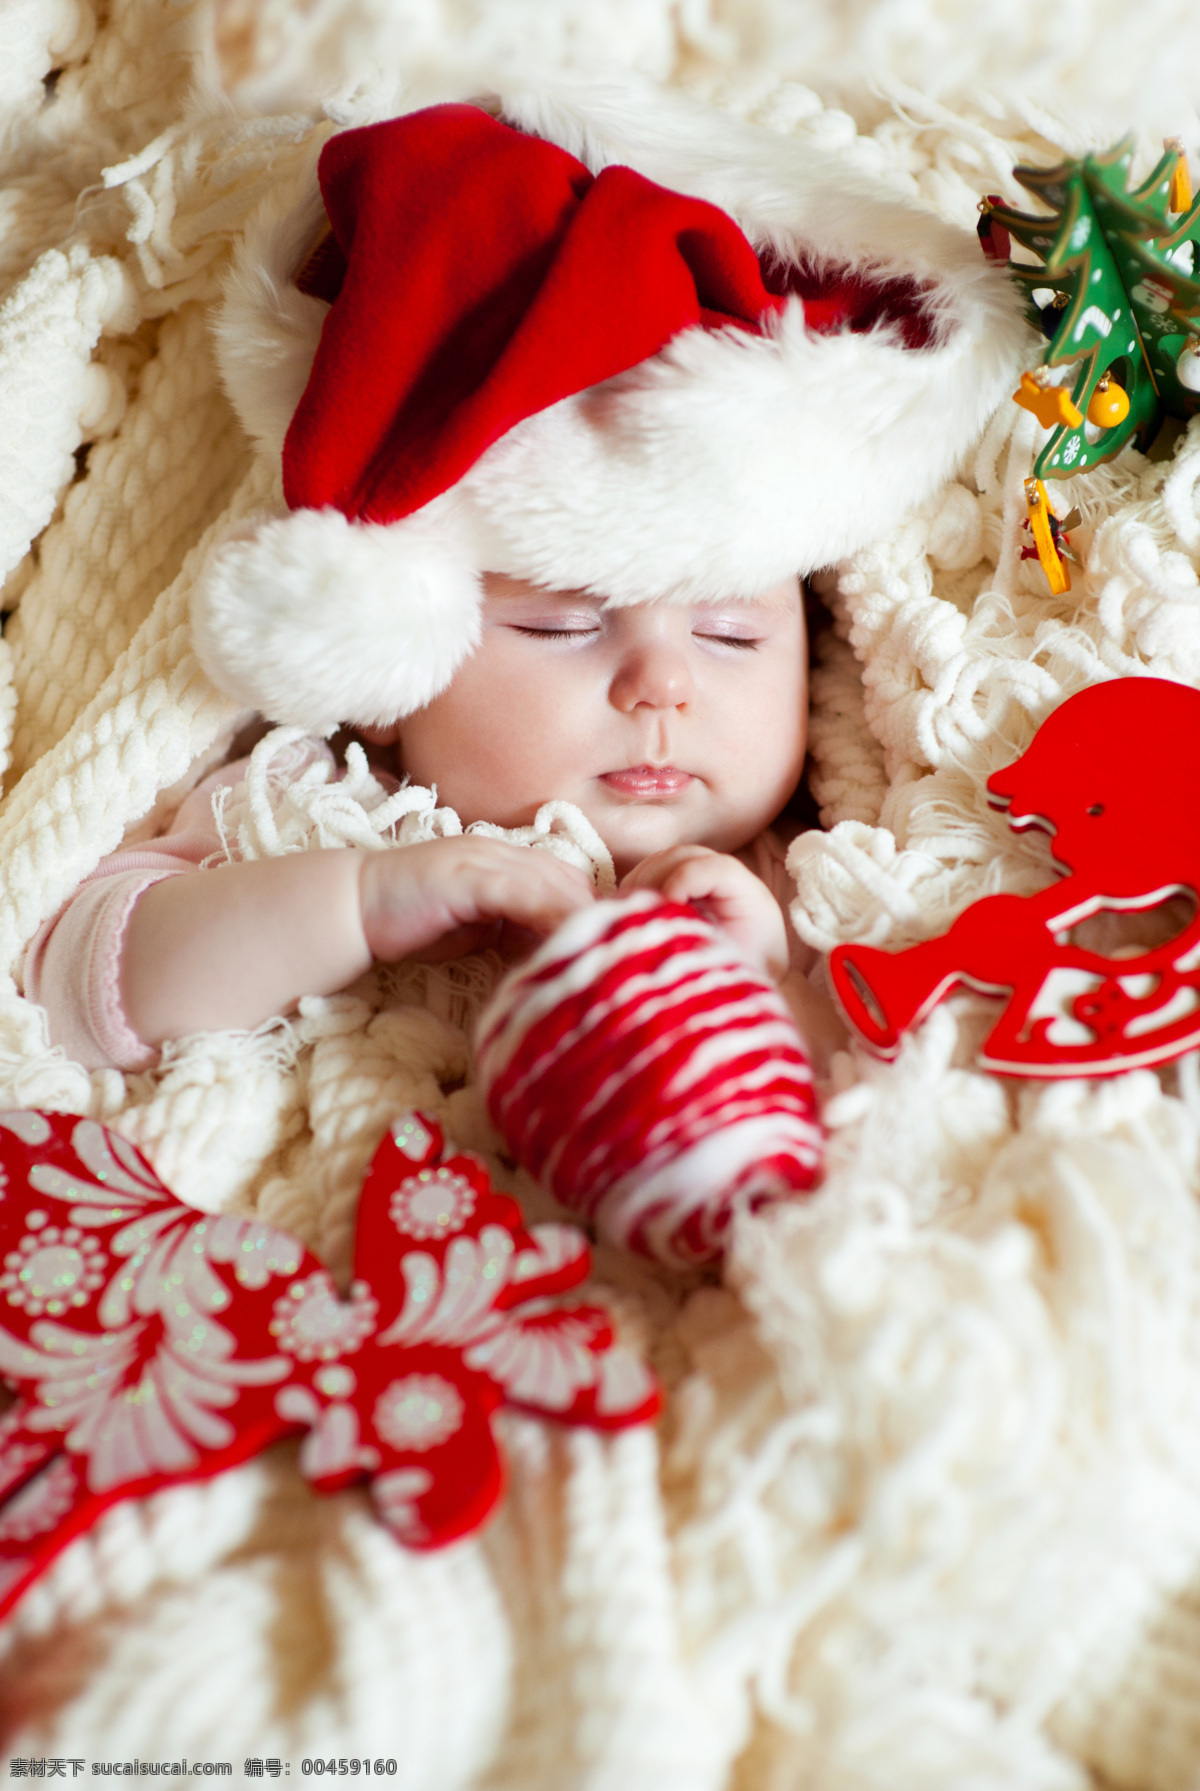 睡觉 儿童摄影 玩具 圣诞节 圣诞帽 儿童 小孩 宝宝 人物 可爱 玩耍 圣诞宝宝 节日素材 儿童图片 人物图片